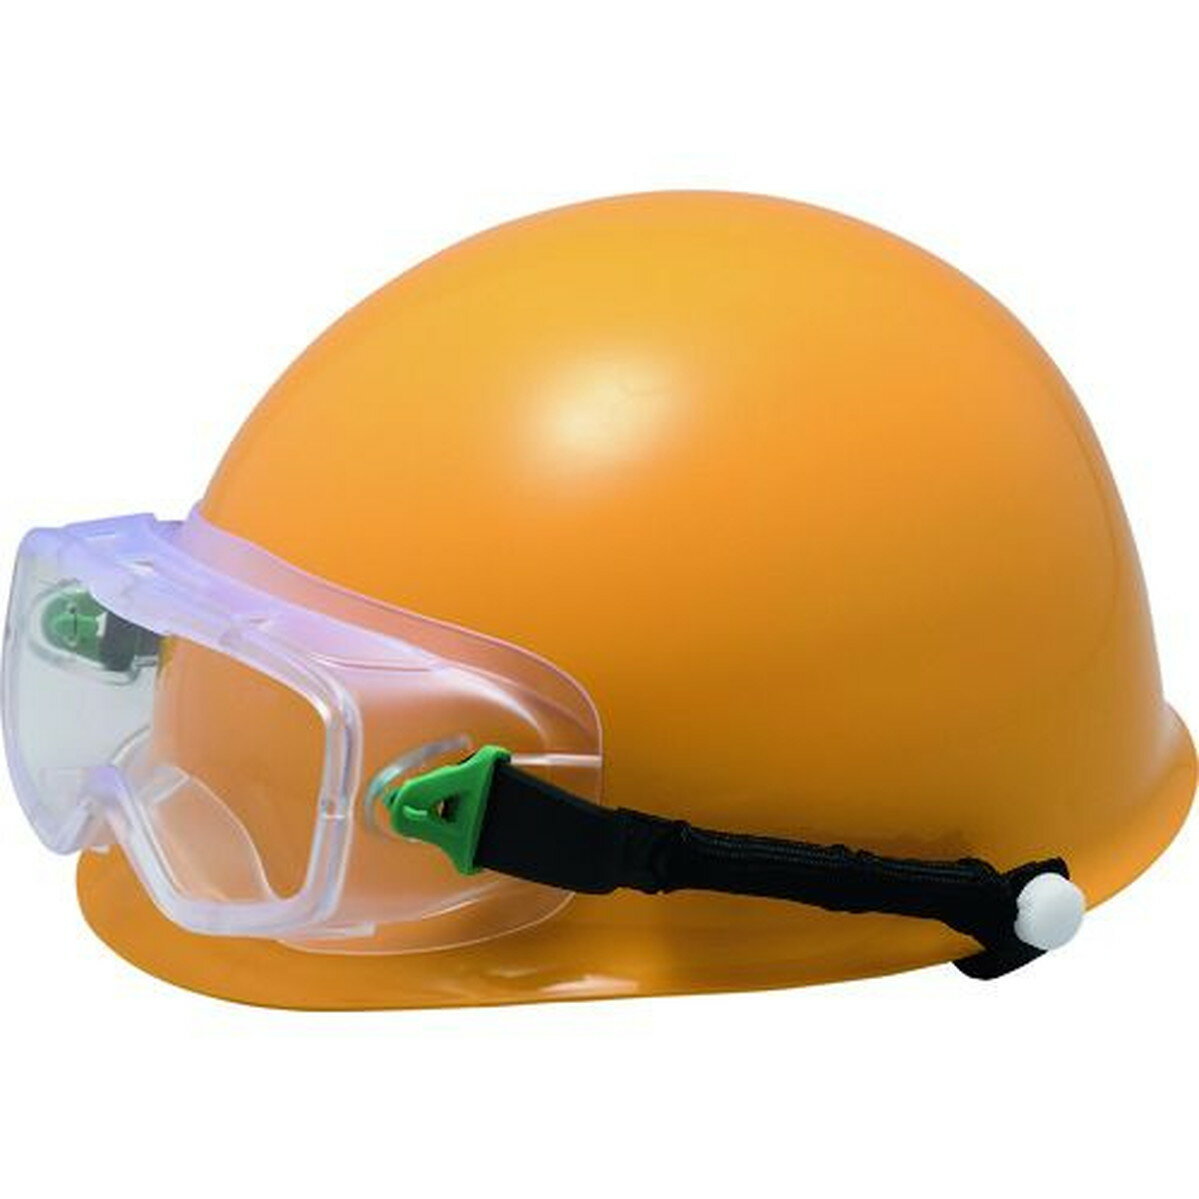 ミドリ安全 ゴーグル型 保護メガネ ヘルメット取付式 VG−502F SPG 1個 (VG-502F-SPG)